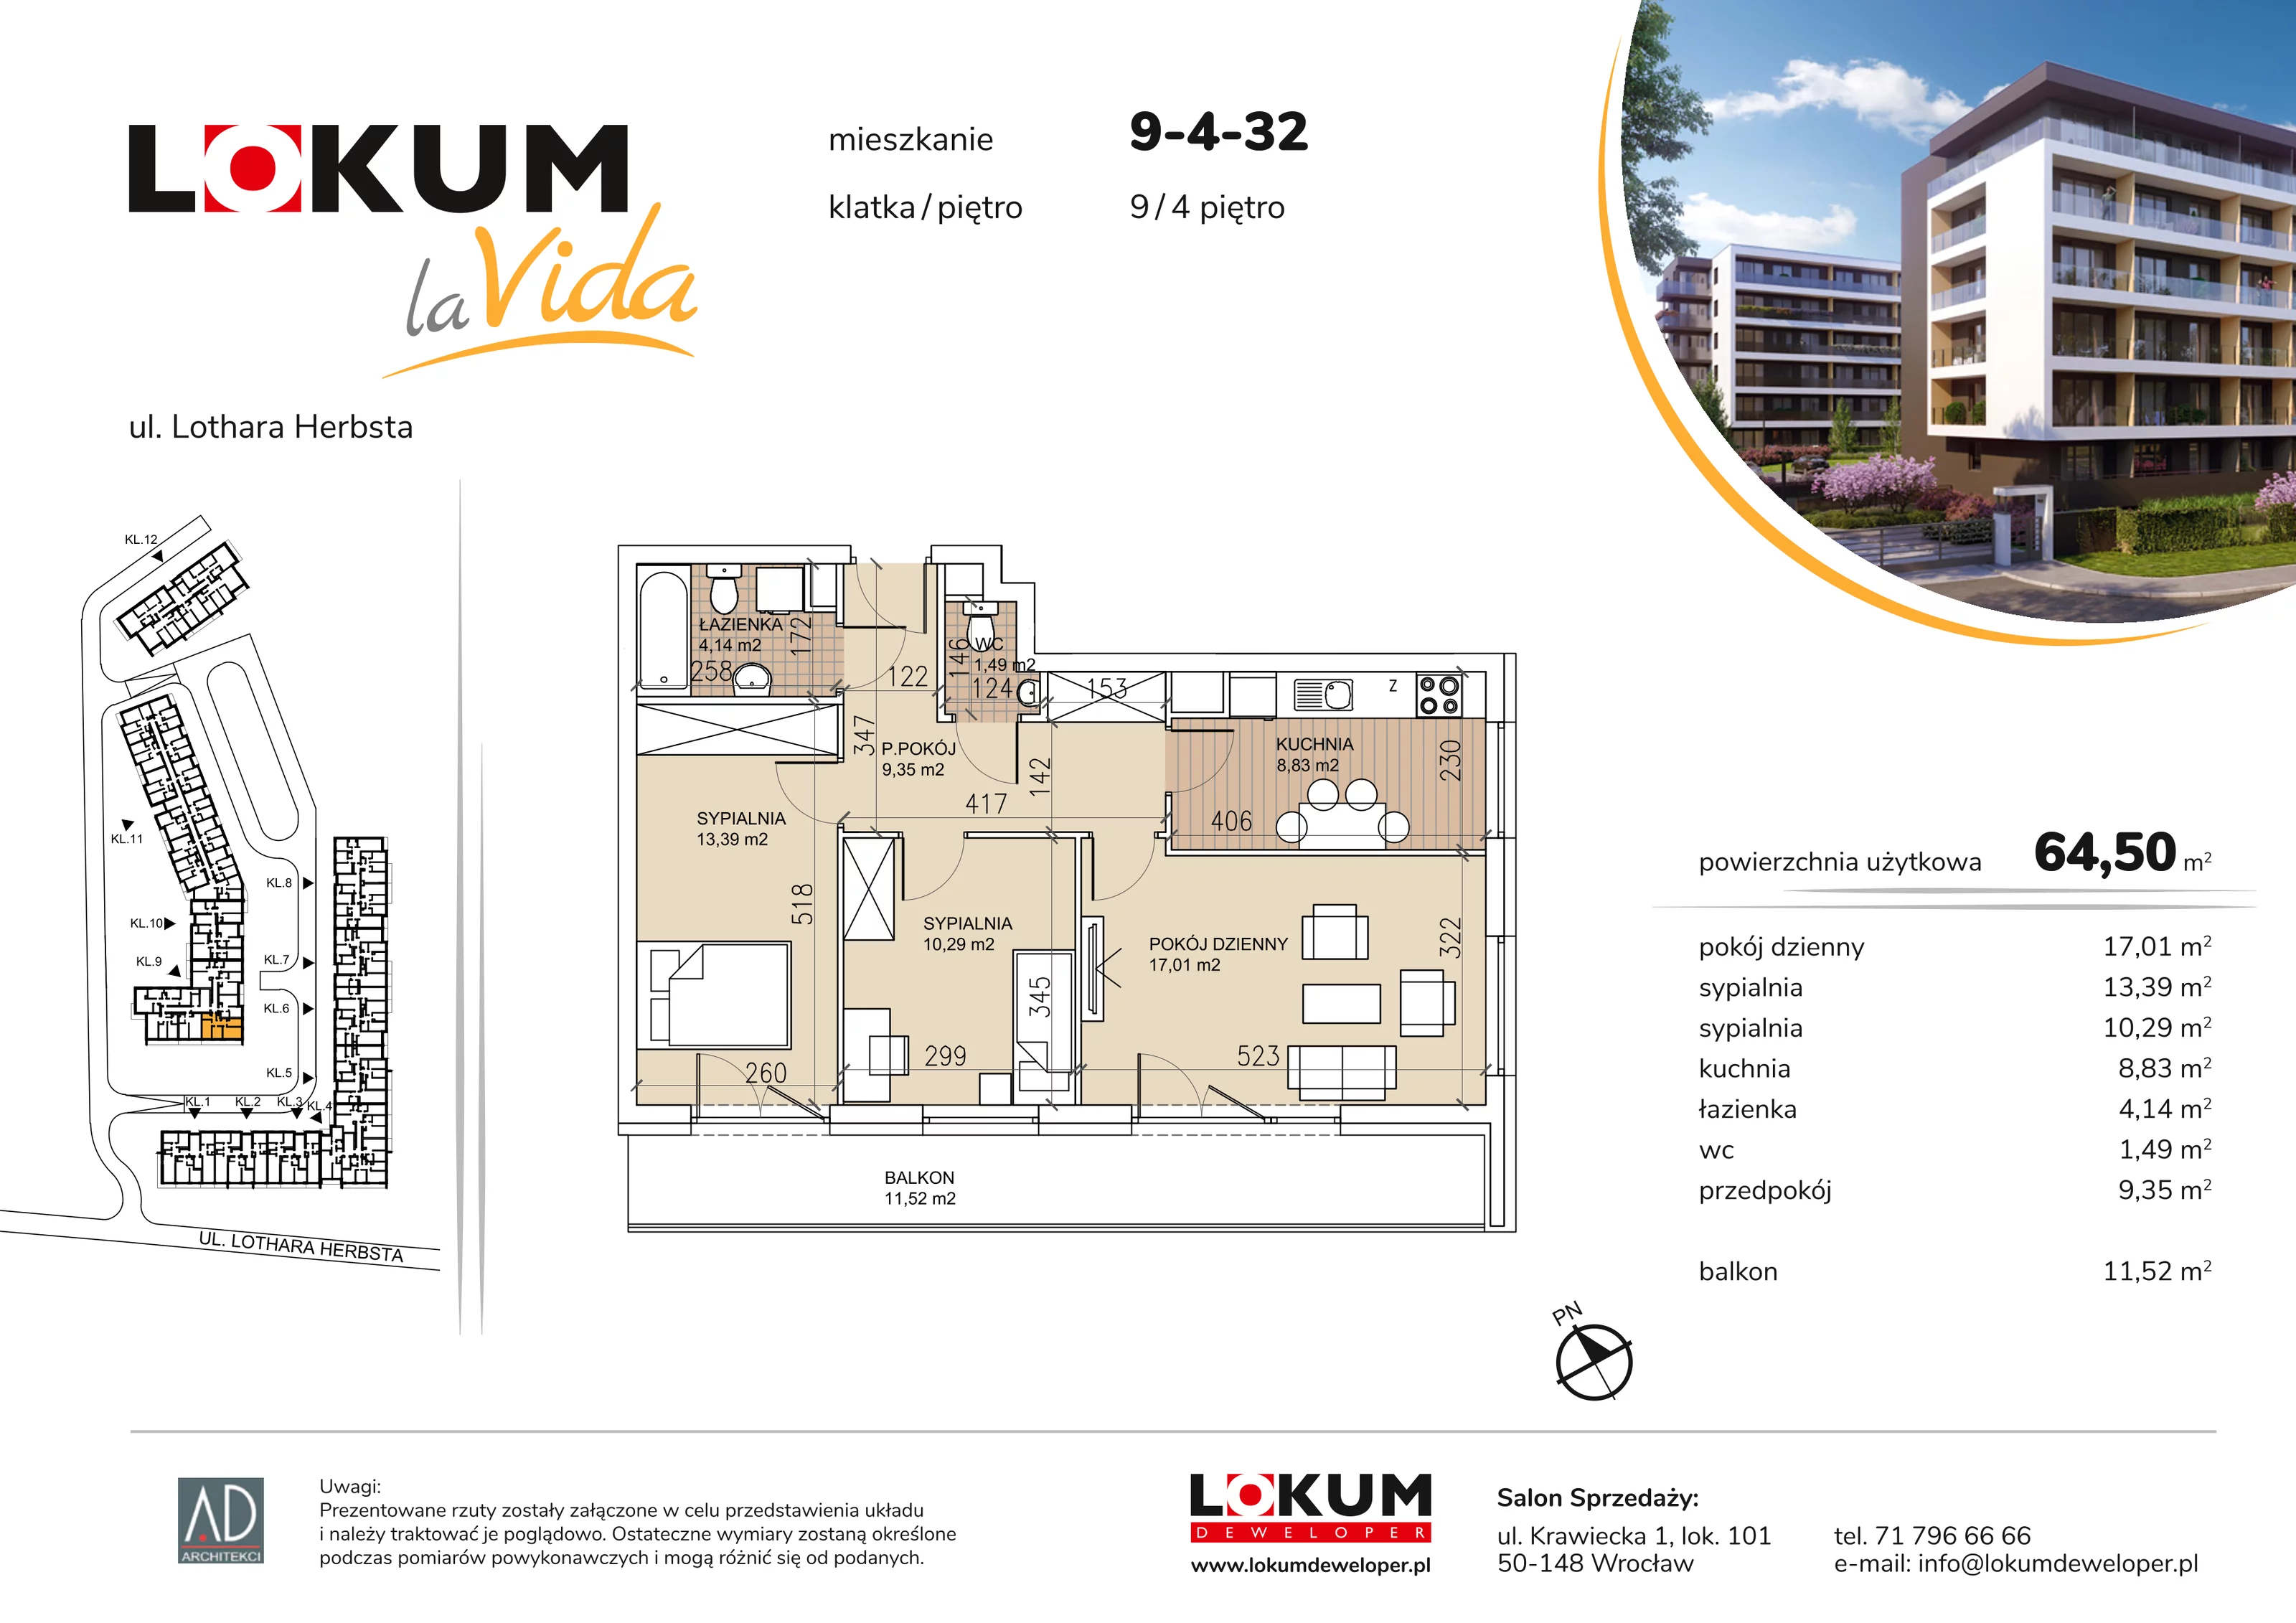 Mieszkanie 64,50 m², piętro 4, oferta nr 9-4-32, Lokum la Vida, Wrocław, Sołtysowice, ul. Lothara Herbsta